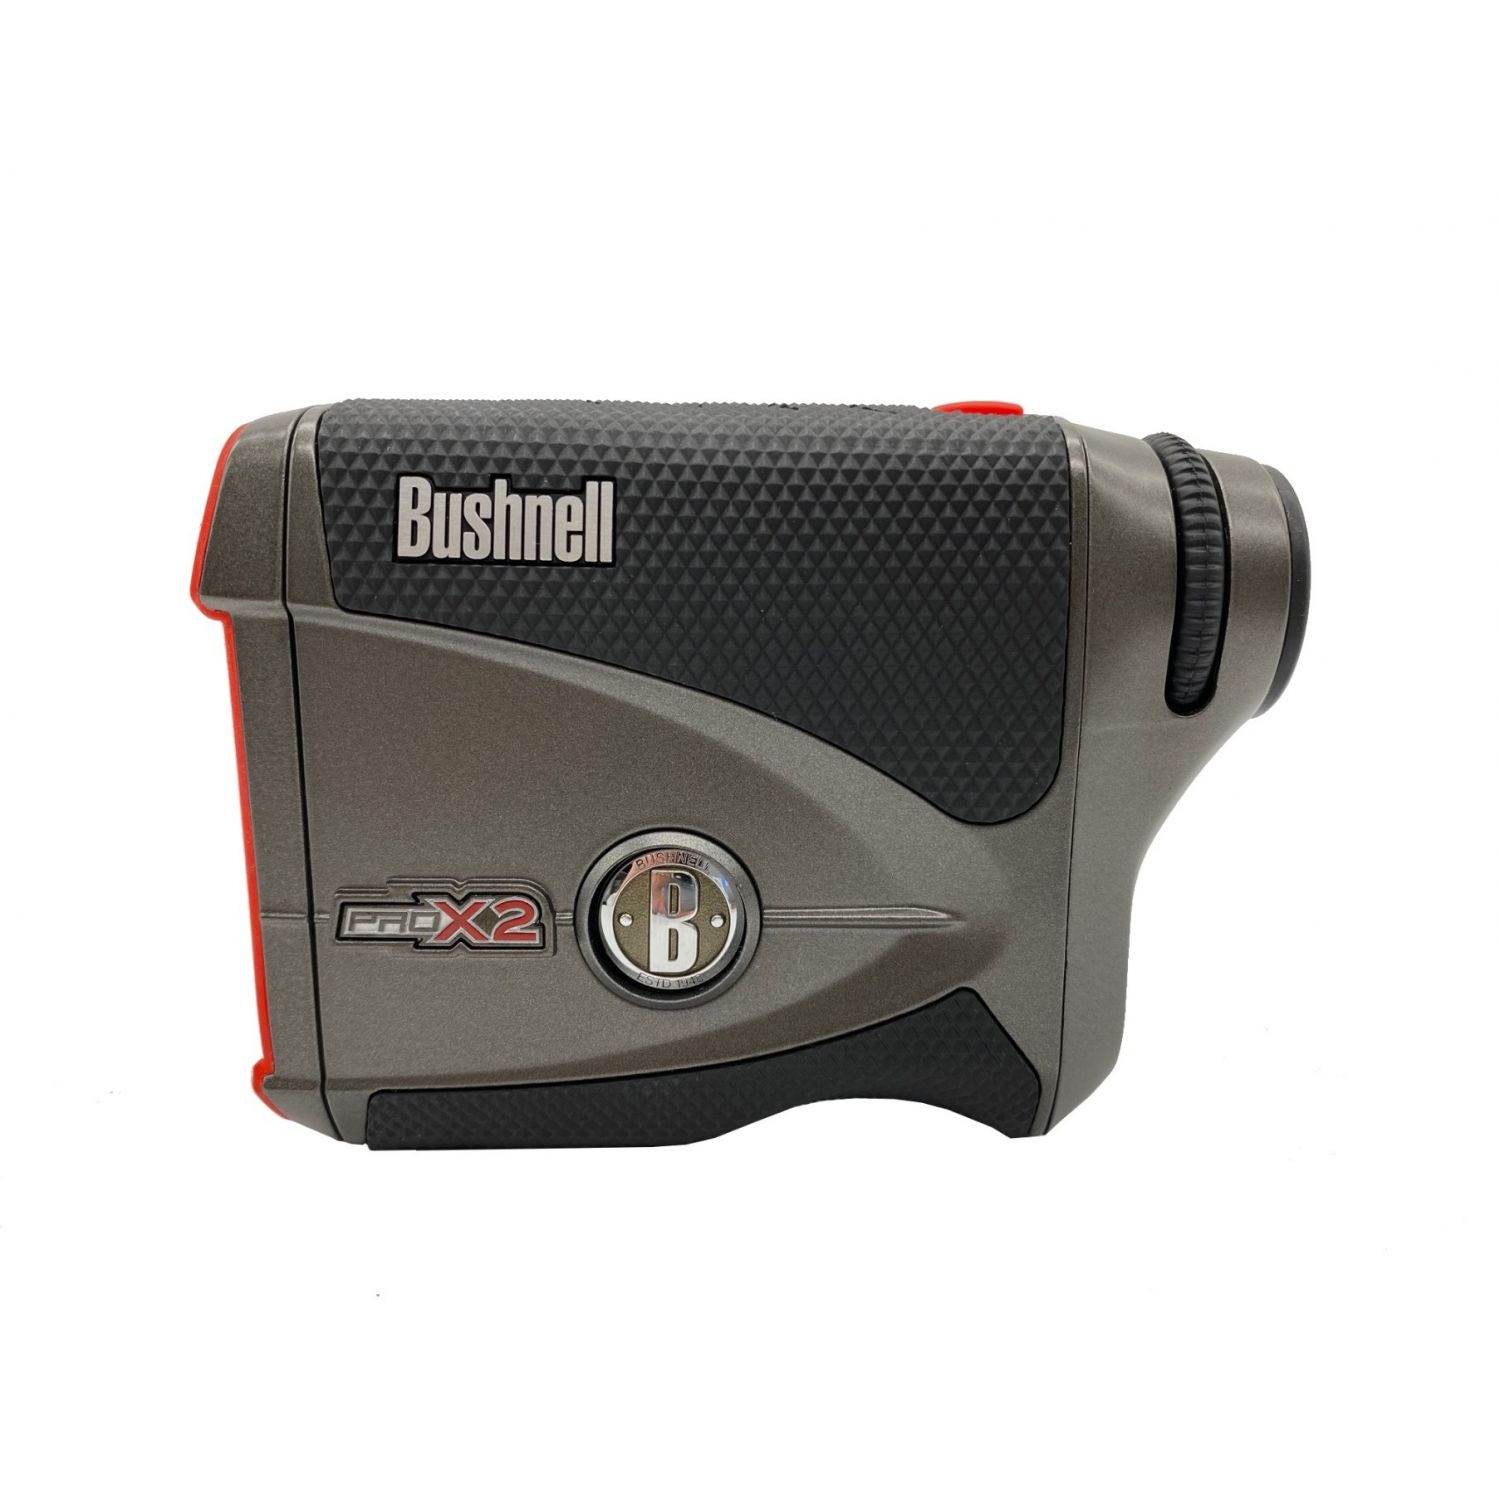 Bushnell (ブッシュネル) ゴルフ用レーザー距離計 ピンシーカープロX2 